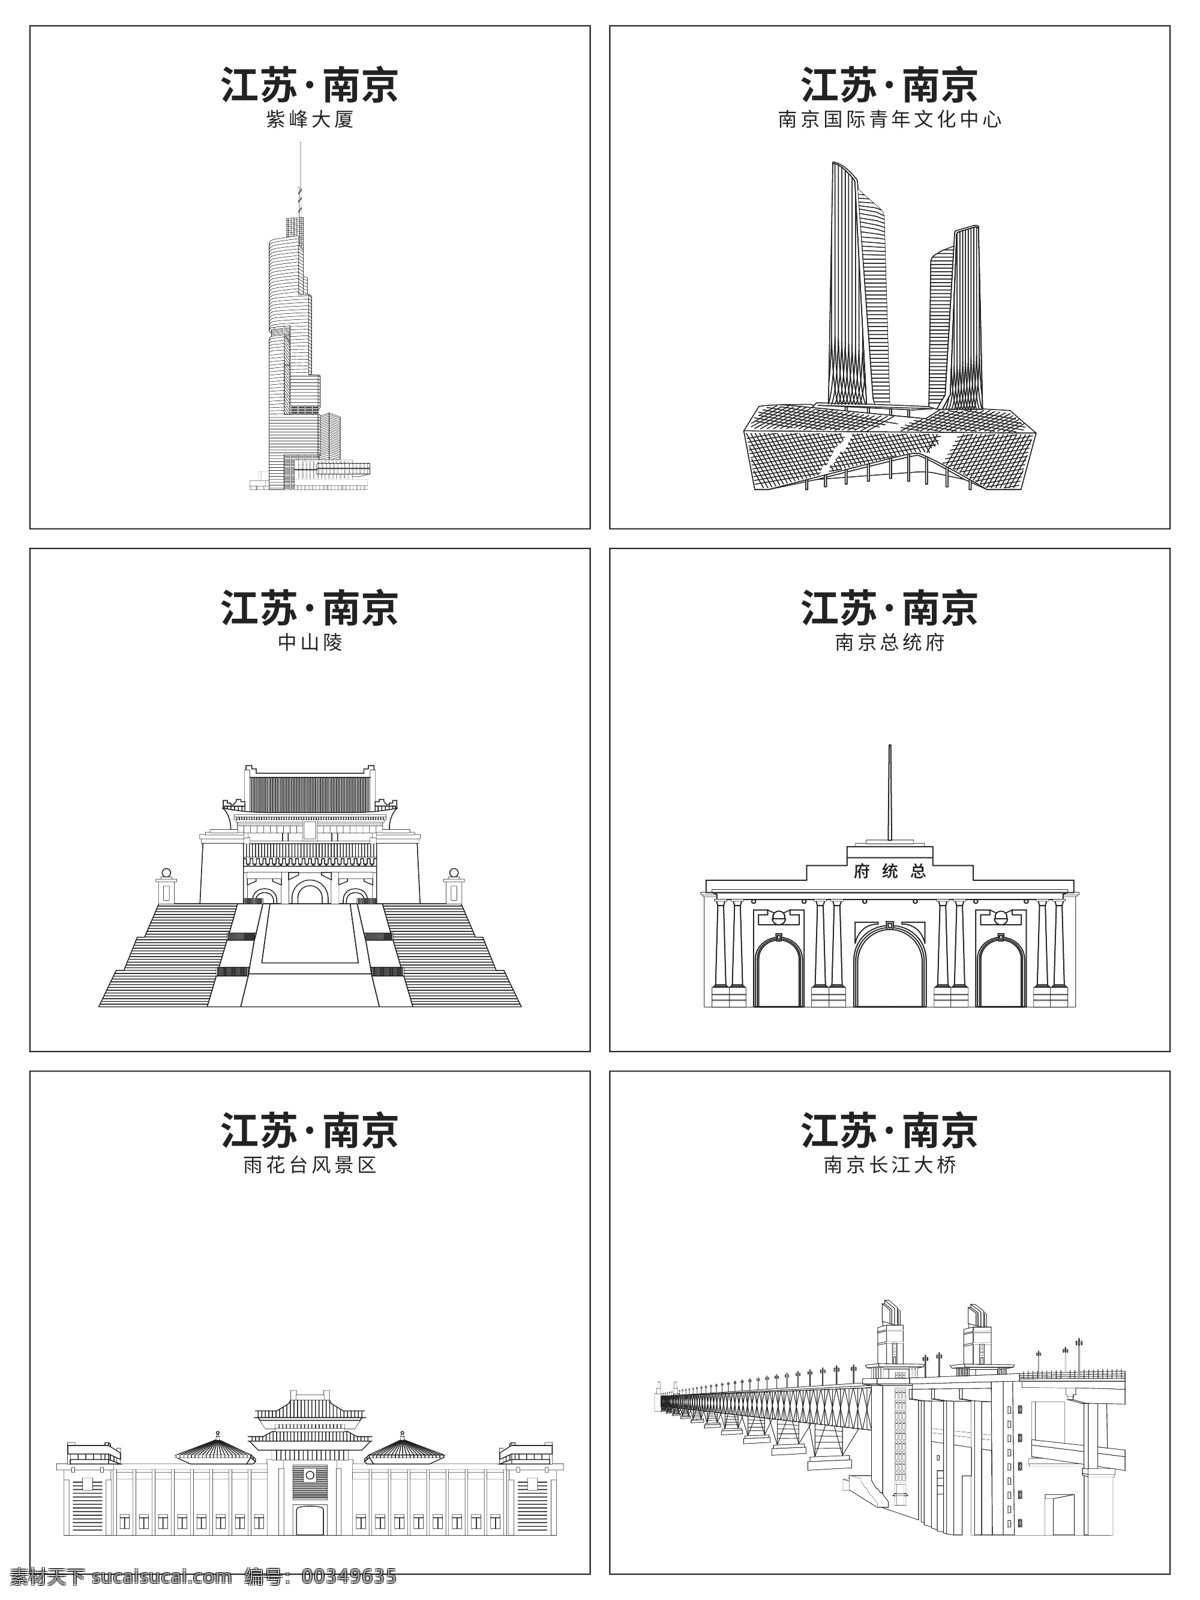 南京建筑 南京 地标建筑 矢量图 南京矢量地标 标志图标 公共标识标志